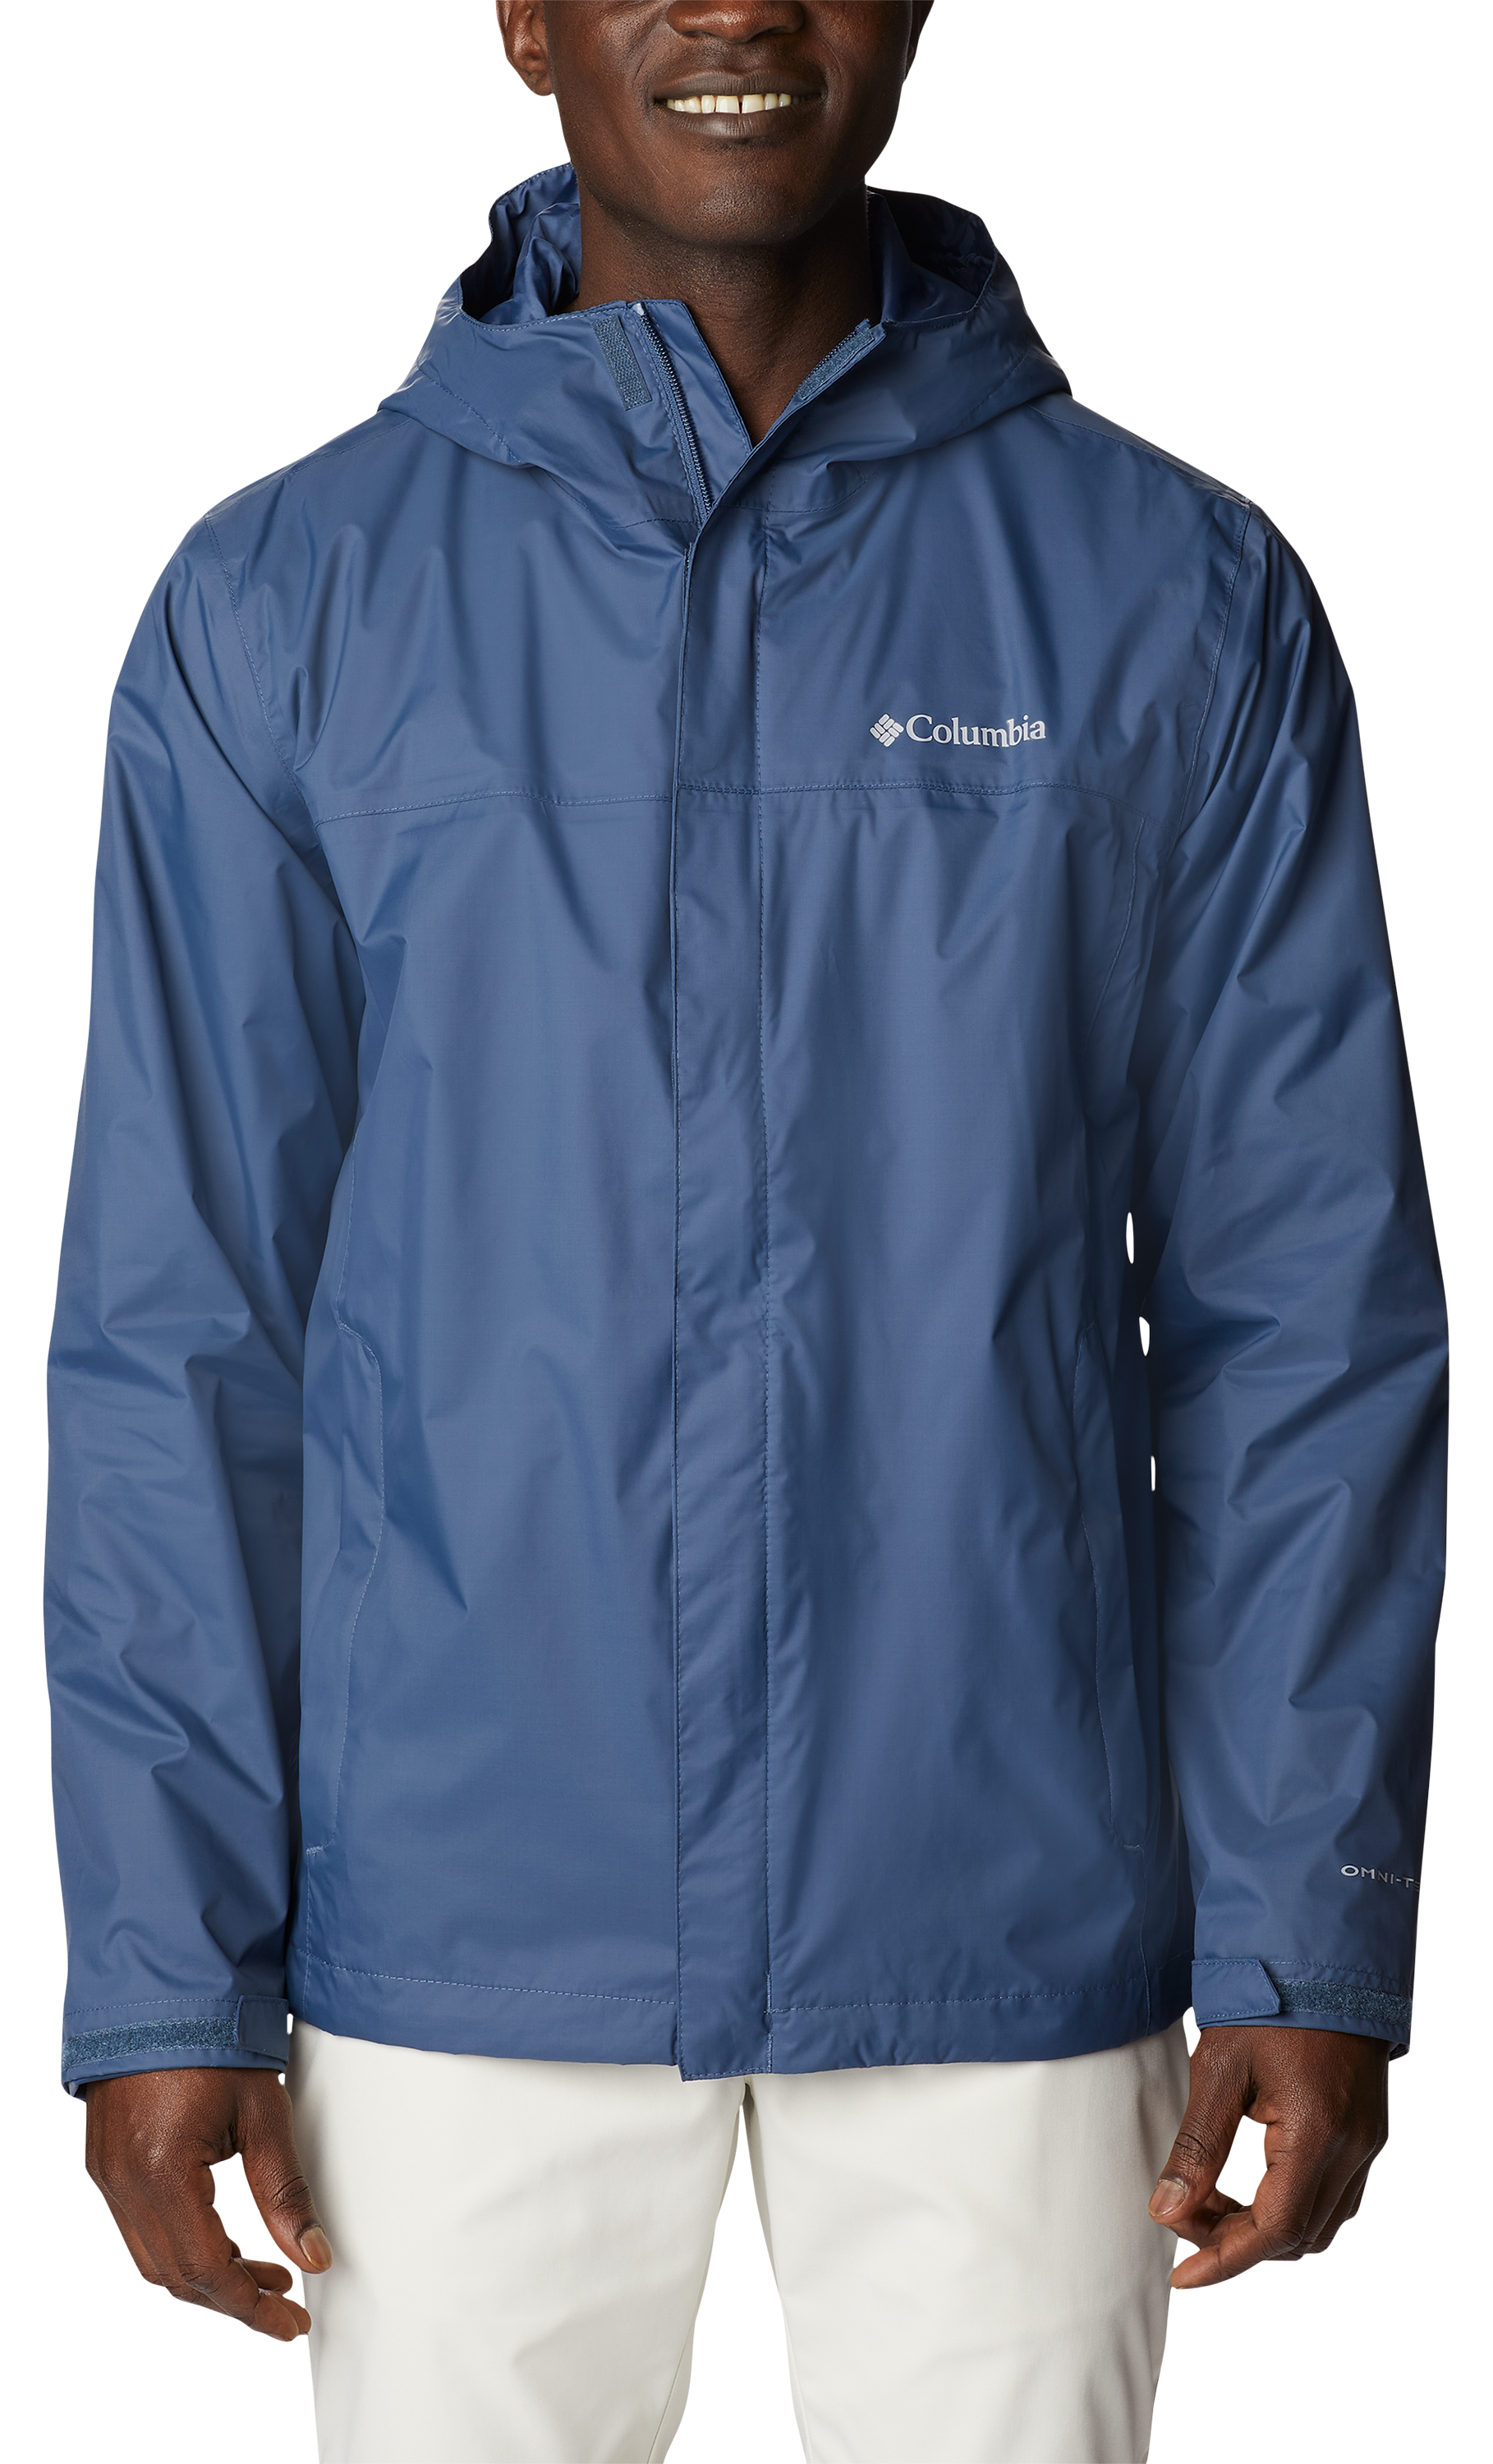 Columbia Watertight II Jacket for Men